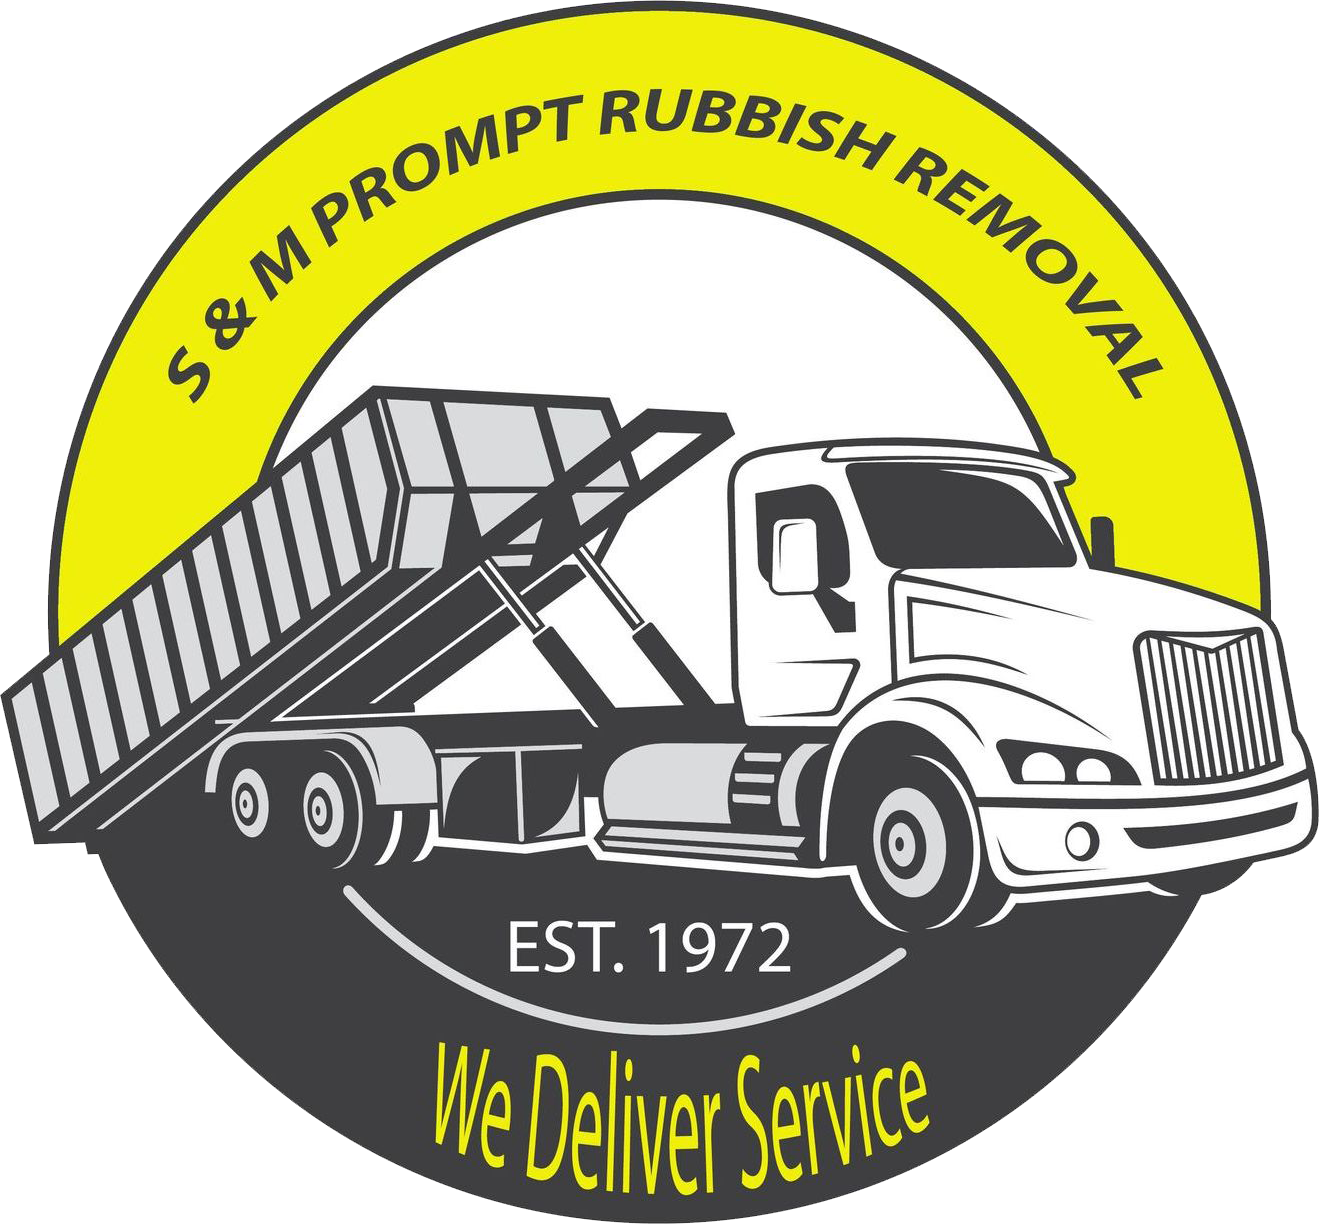 S & M Prompt Rubbish Removal Service, Inc. Logo